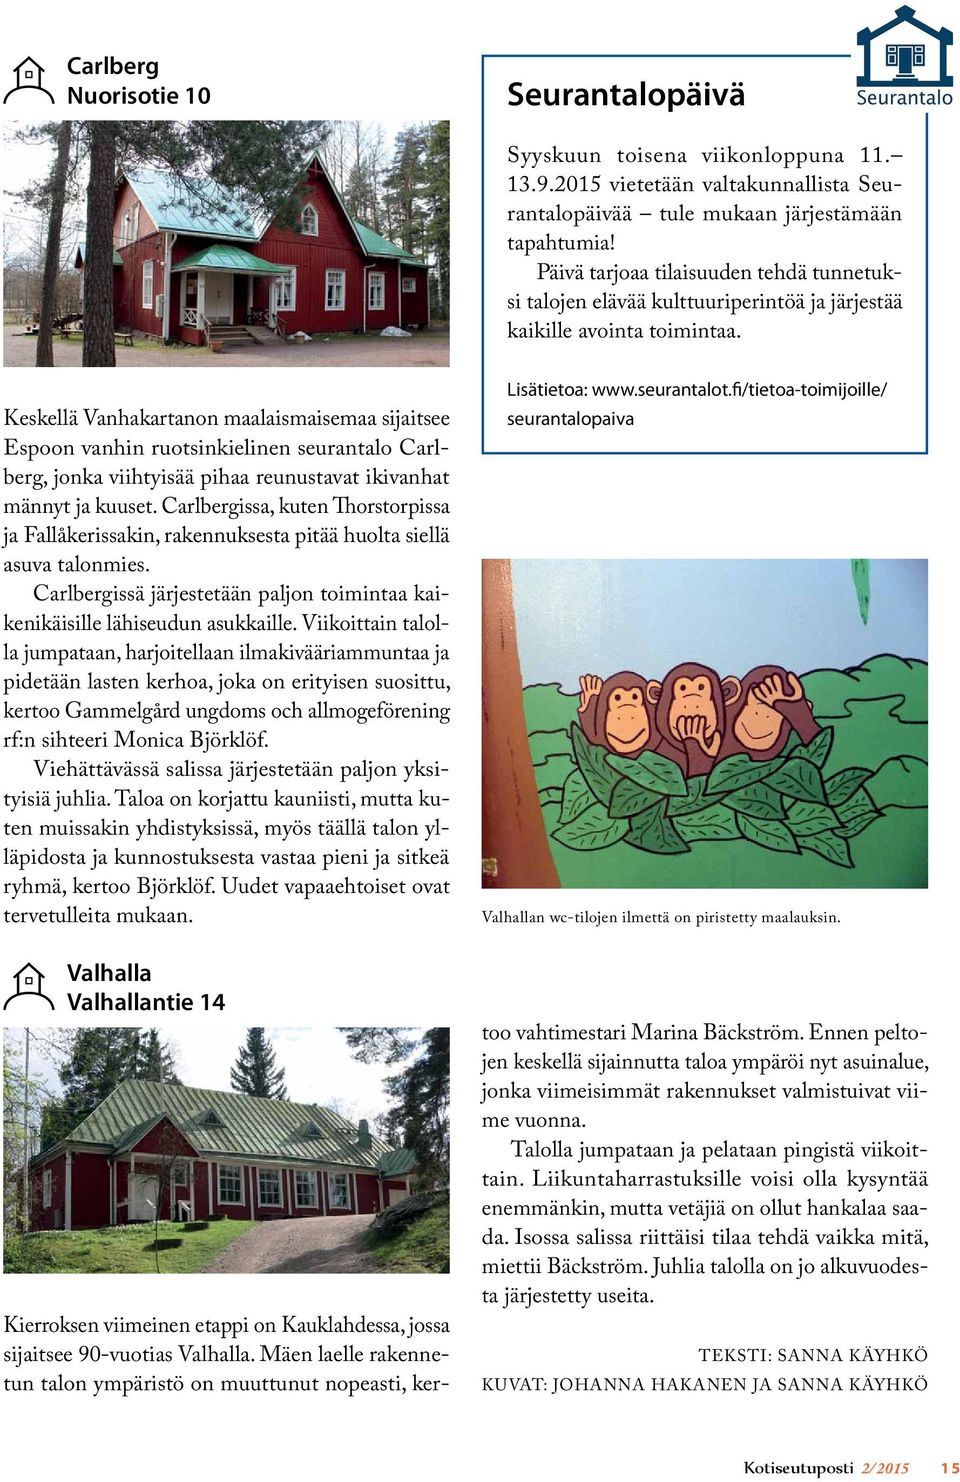 Keskellä Vanhakartanon maalaismaisemaa sijaitsee Espoon vanhin ruotsinkielinen seurantalo Carlberg, jonka viihtyisää pihaa reunustavat ikivanhat männyt ja kuuset.